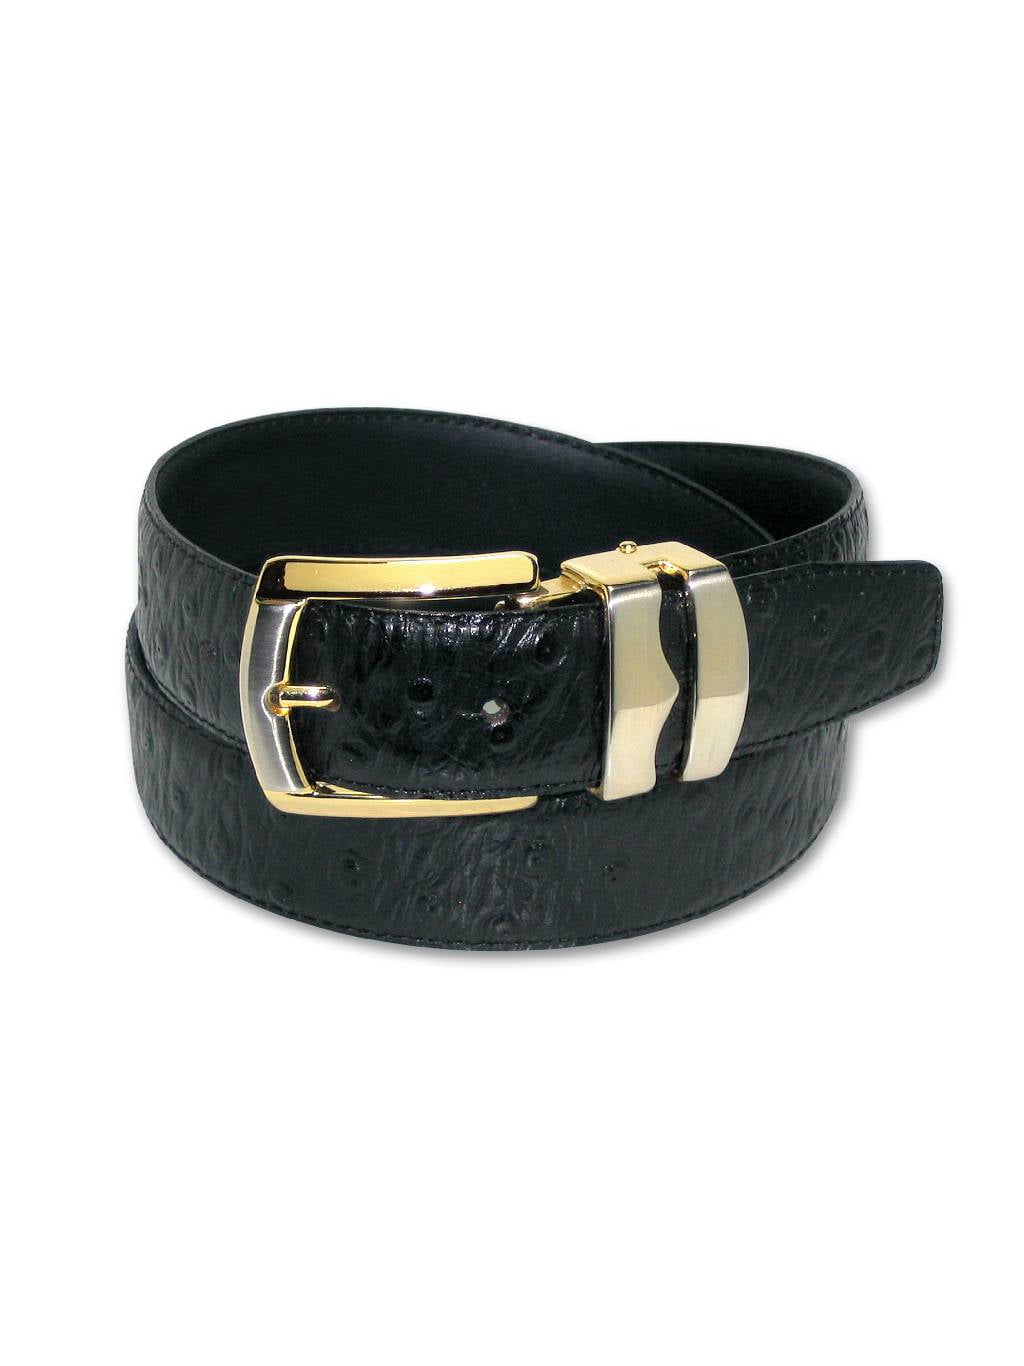 OSTRICH Pattern BLACK Color BONDED Leather Men's Belt Gold-Tone Buckle ...